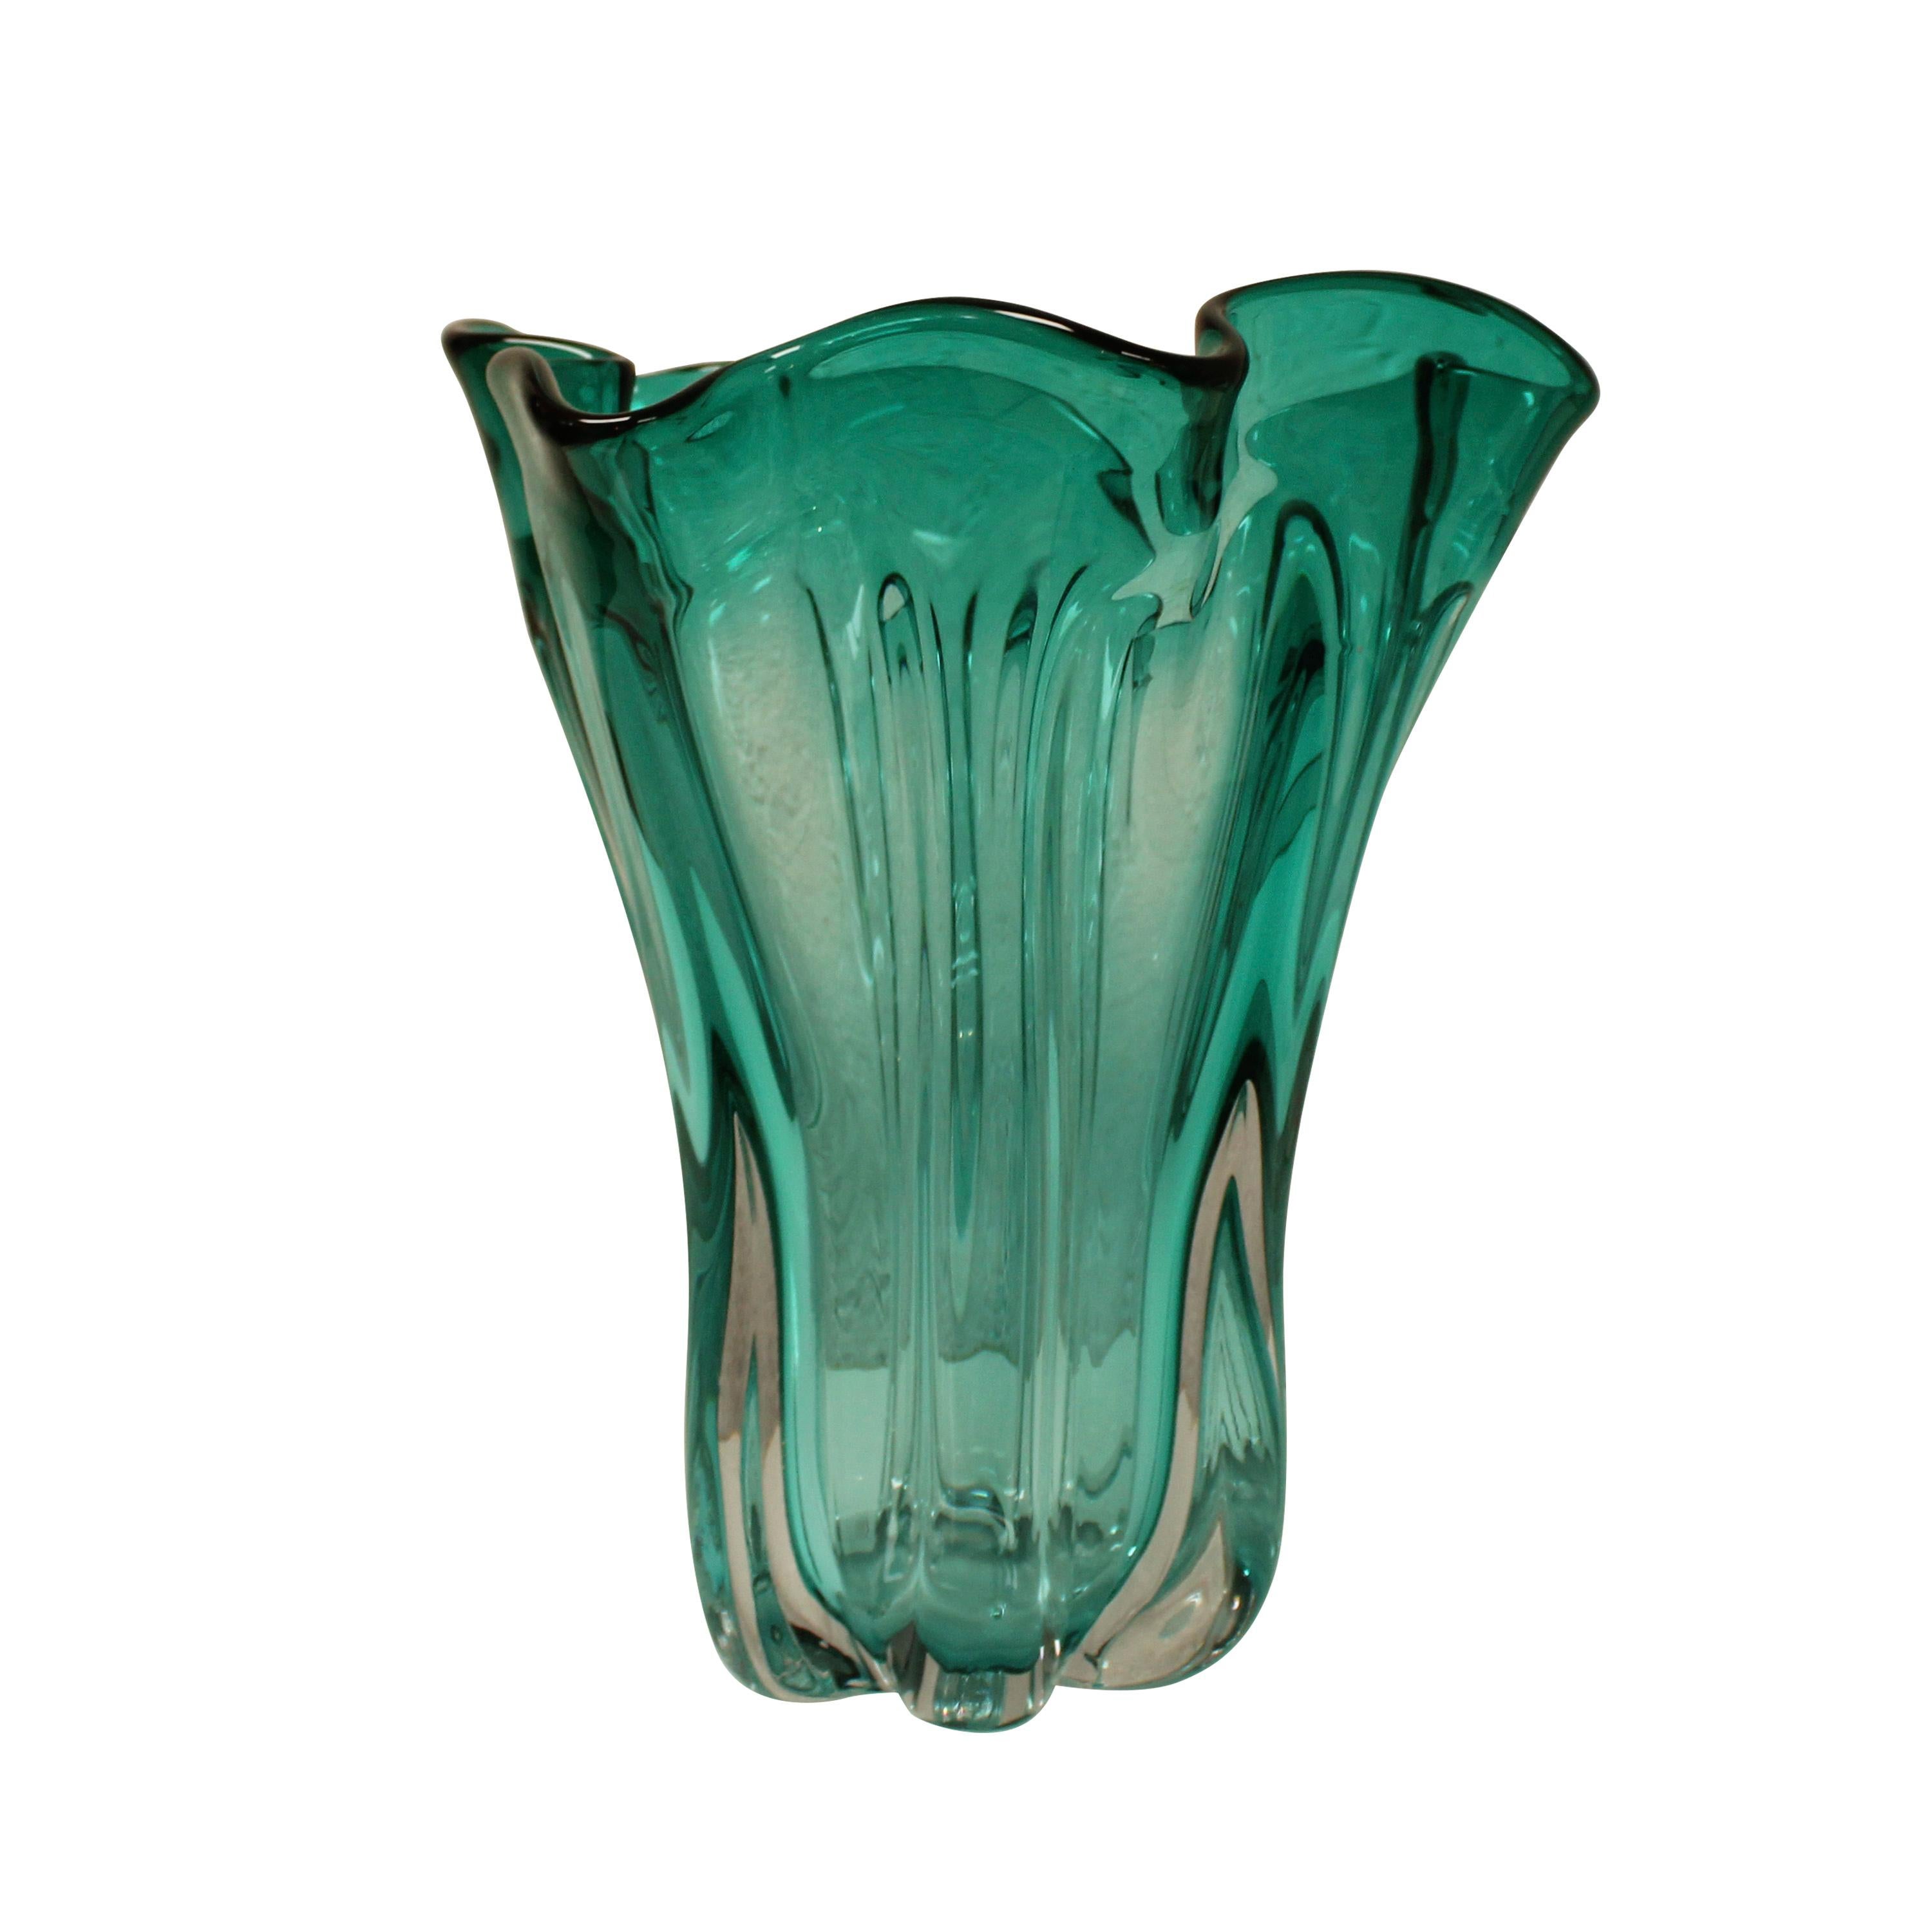 Vase aus mundgeblasenem, italienischem, türkisfarbenem, halbtransparentem Glas mit einer von der Nature inspirierten, organischen Form.